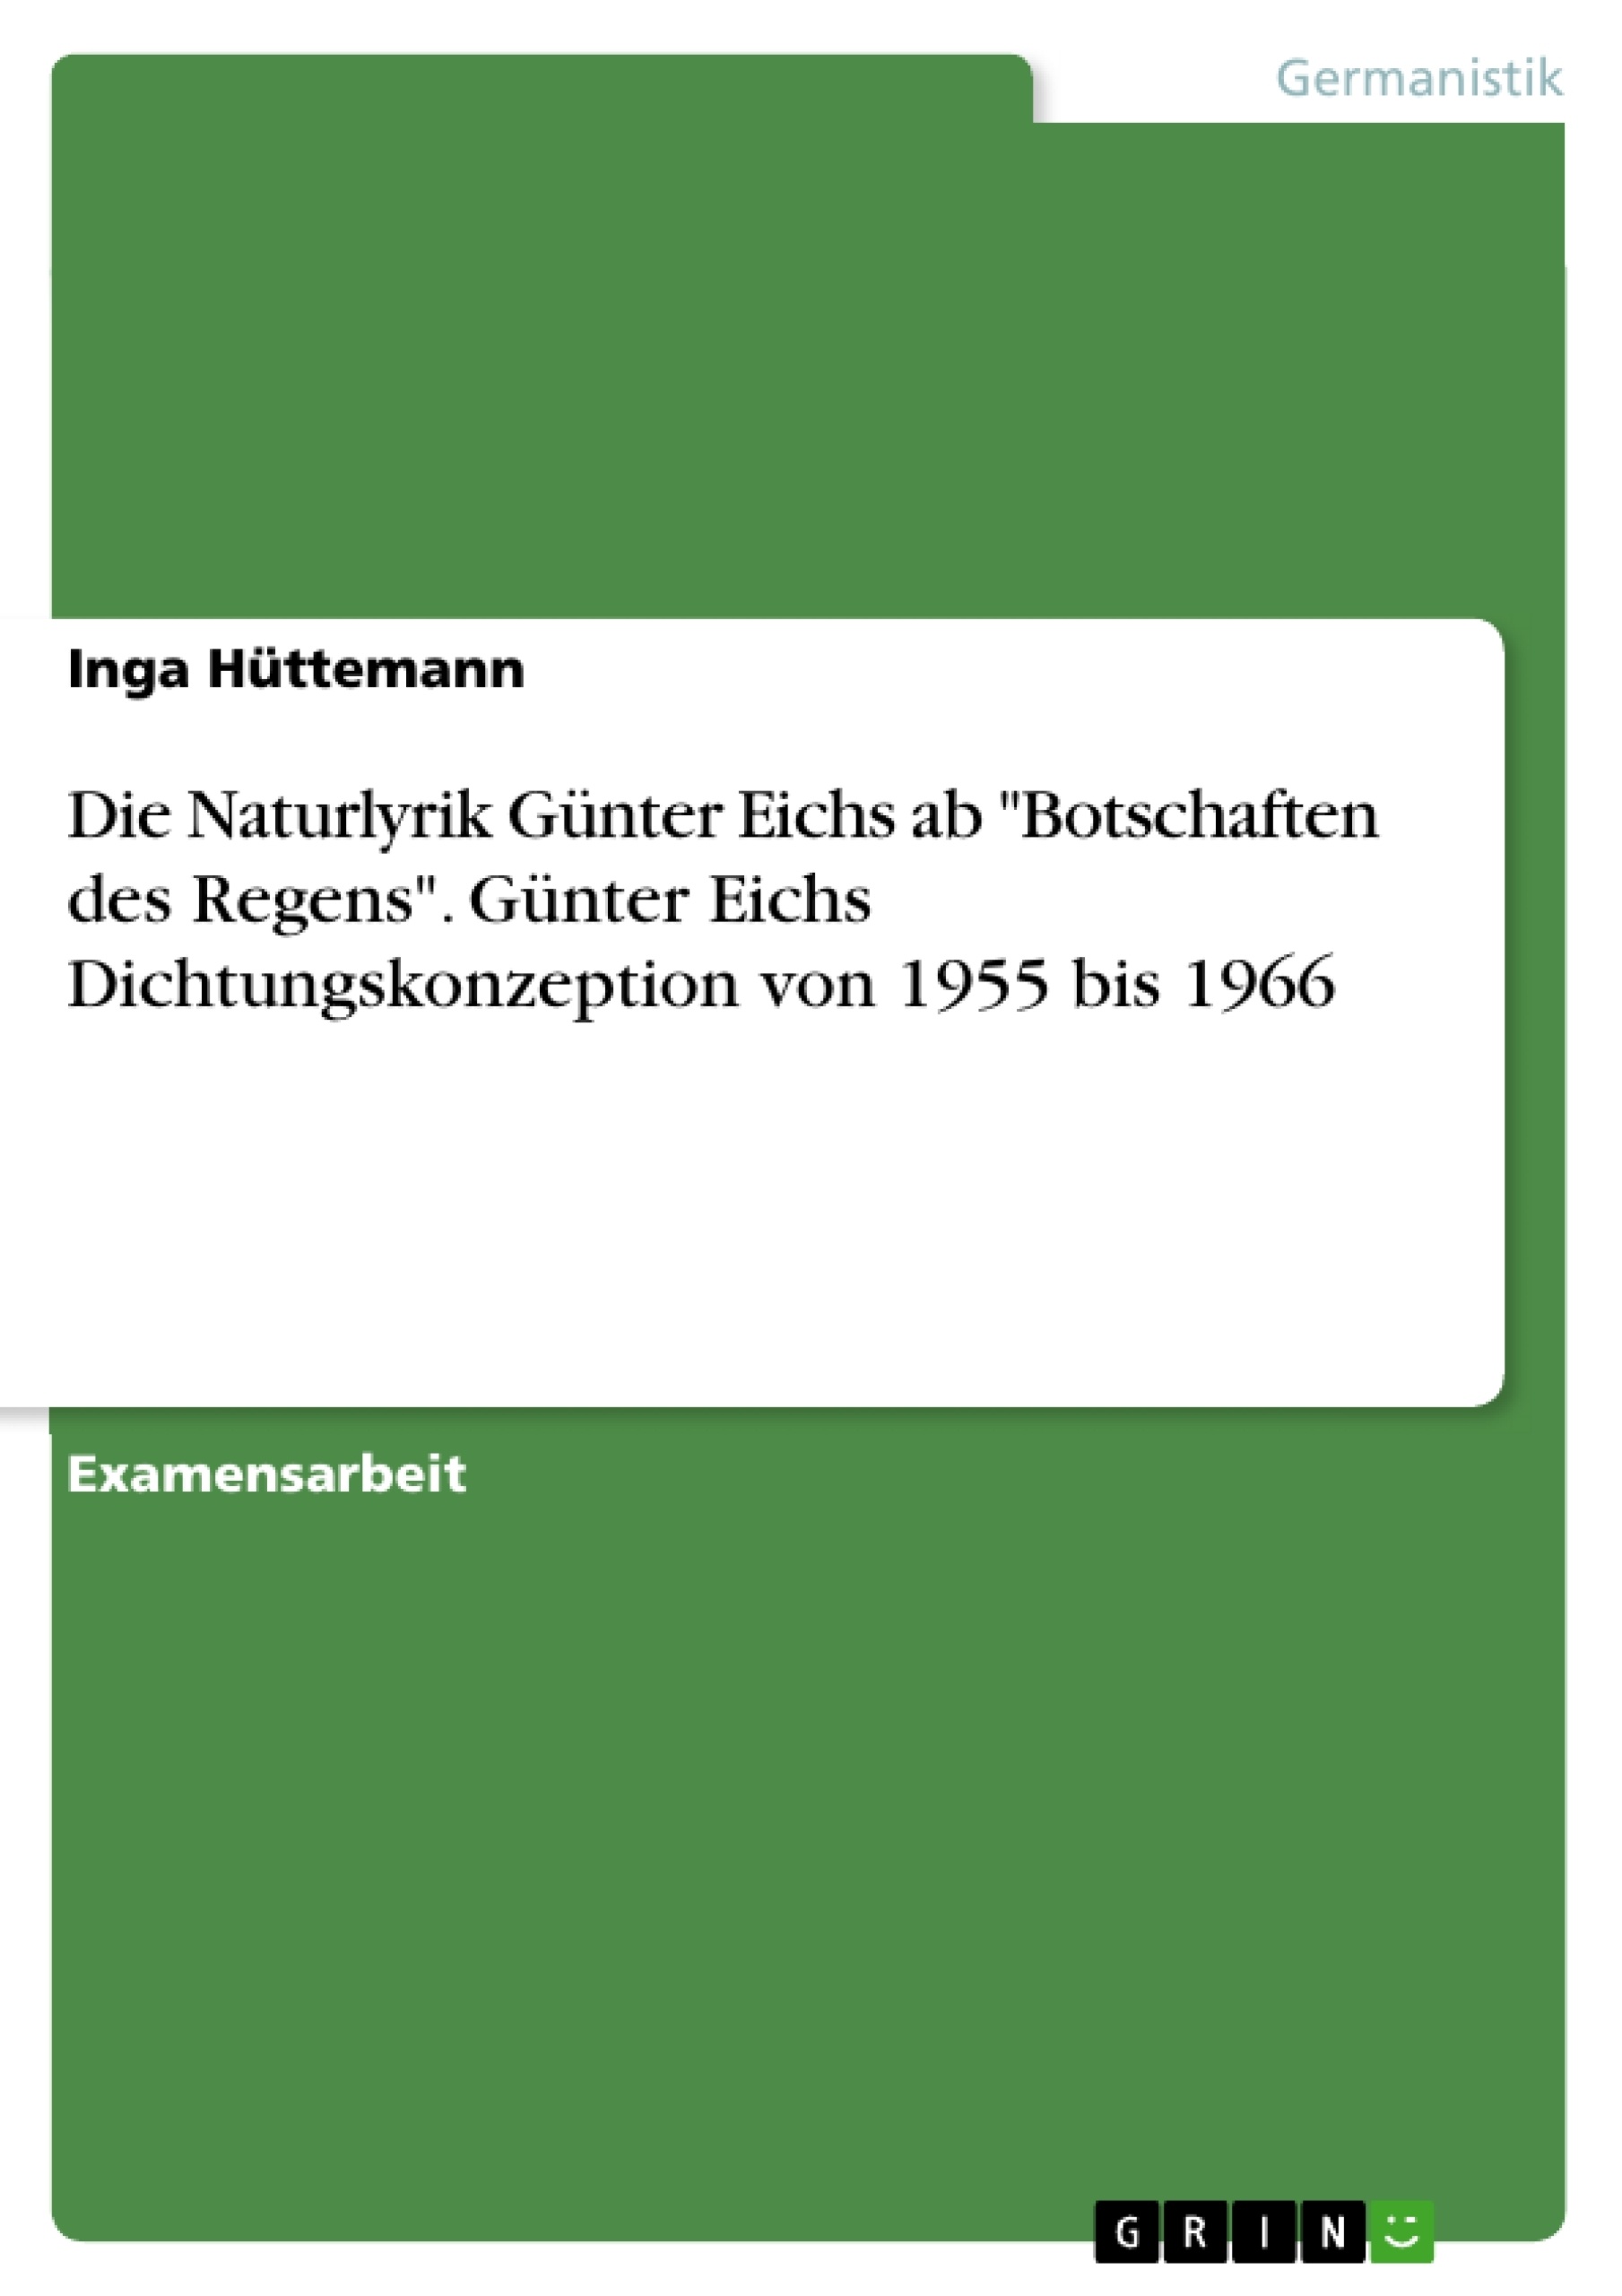 Titre: Die Naturlyrik Günter Eichs ab "Botschaften des Regens". Günter Eichs Dichtungskonzeption von 1955 bis 1966